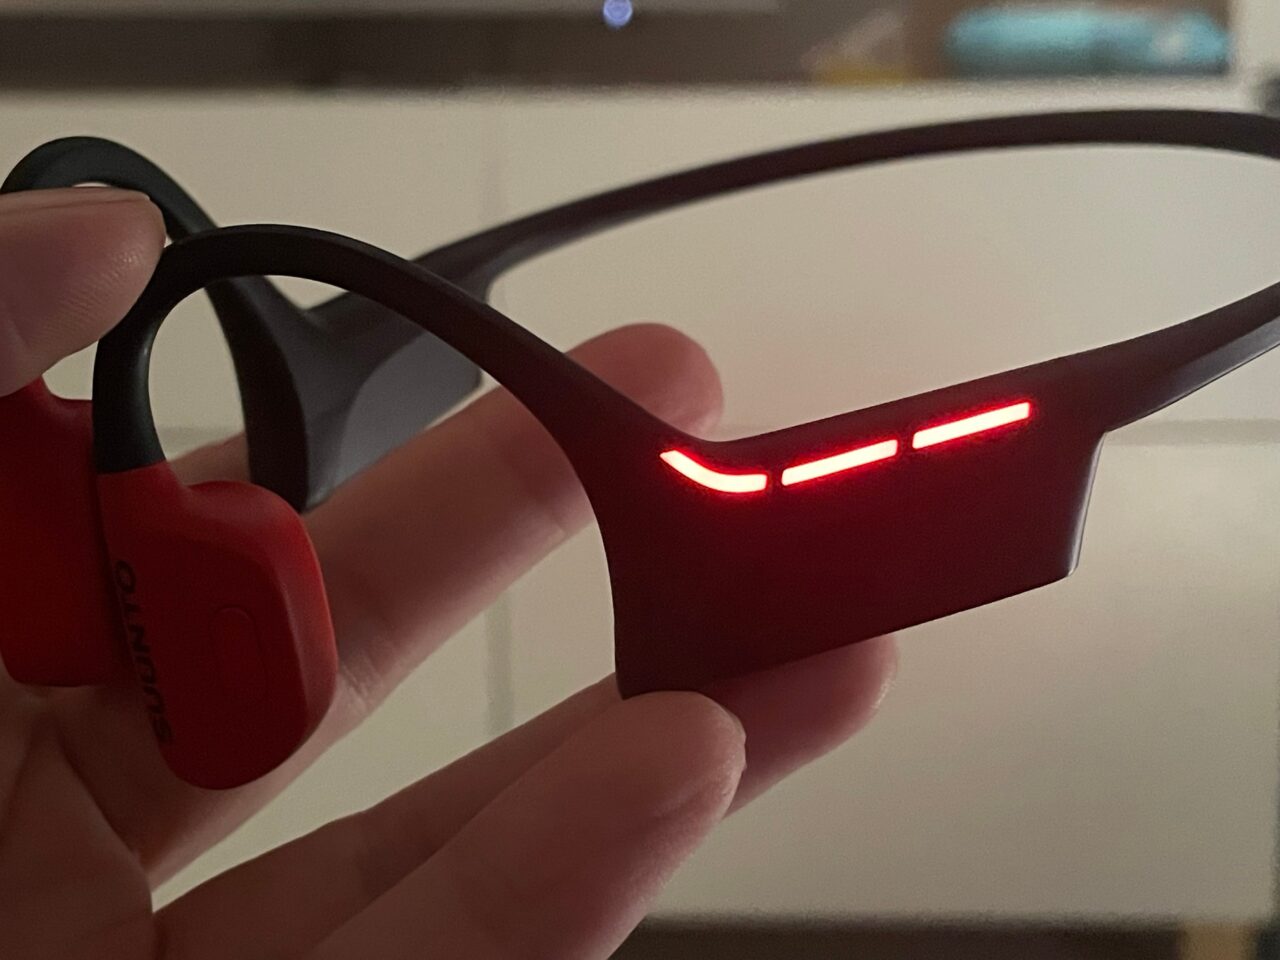 Czerwone słuchawki sportowe trzymane w dłoni, z podświetleniem LED na pałąku.